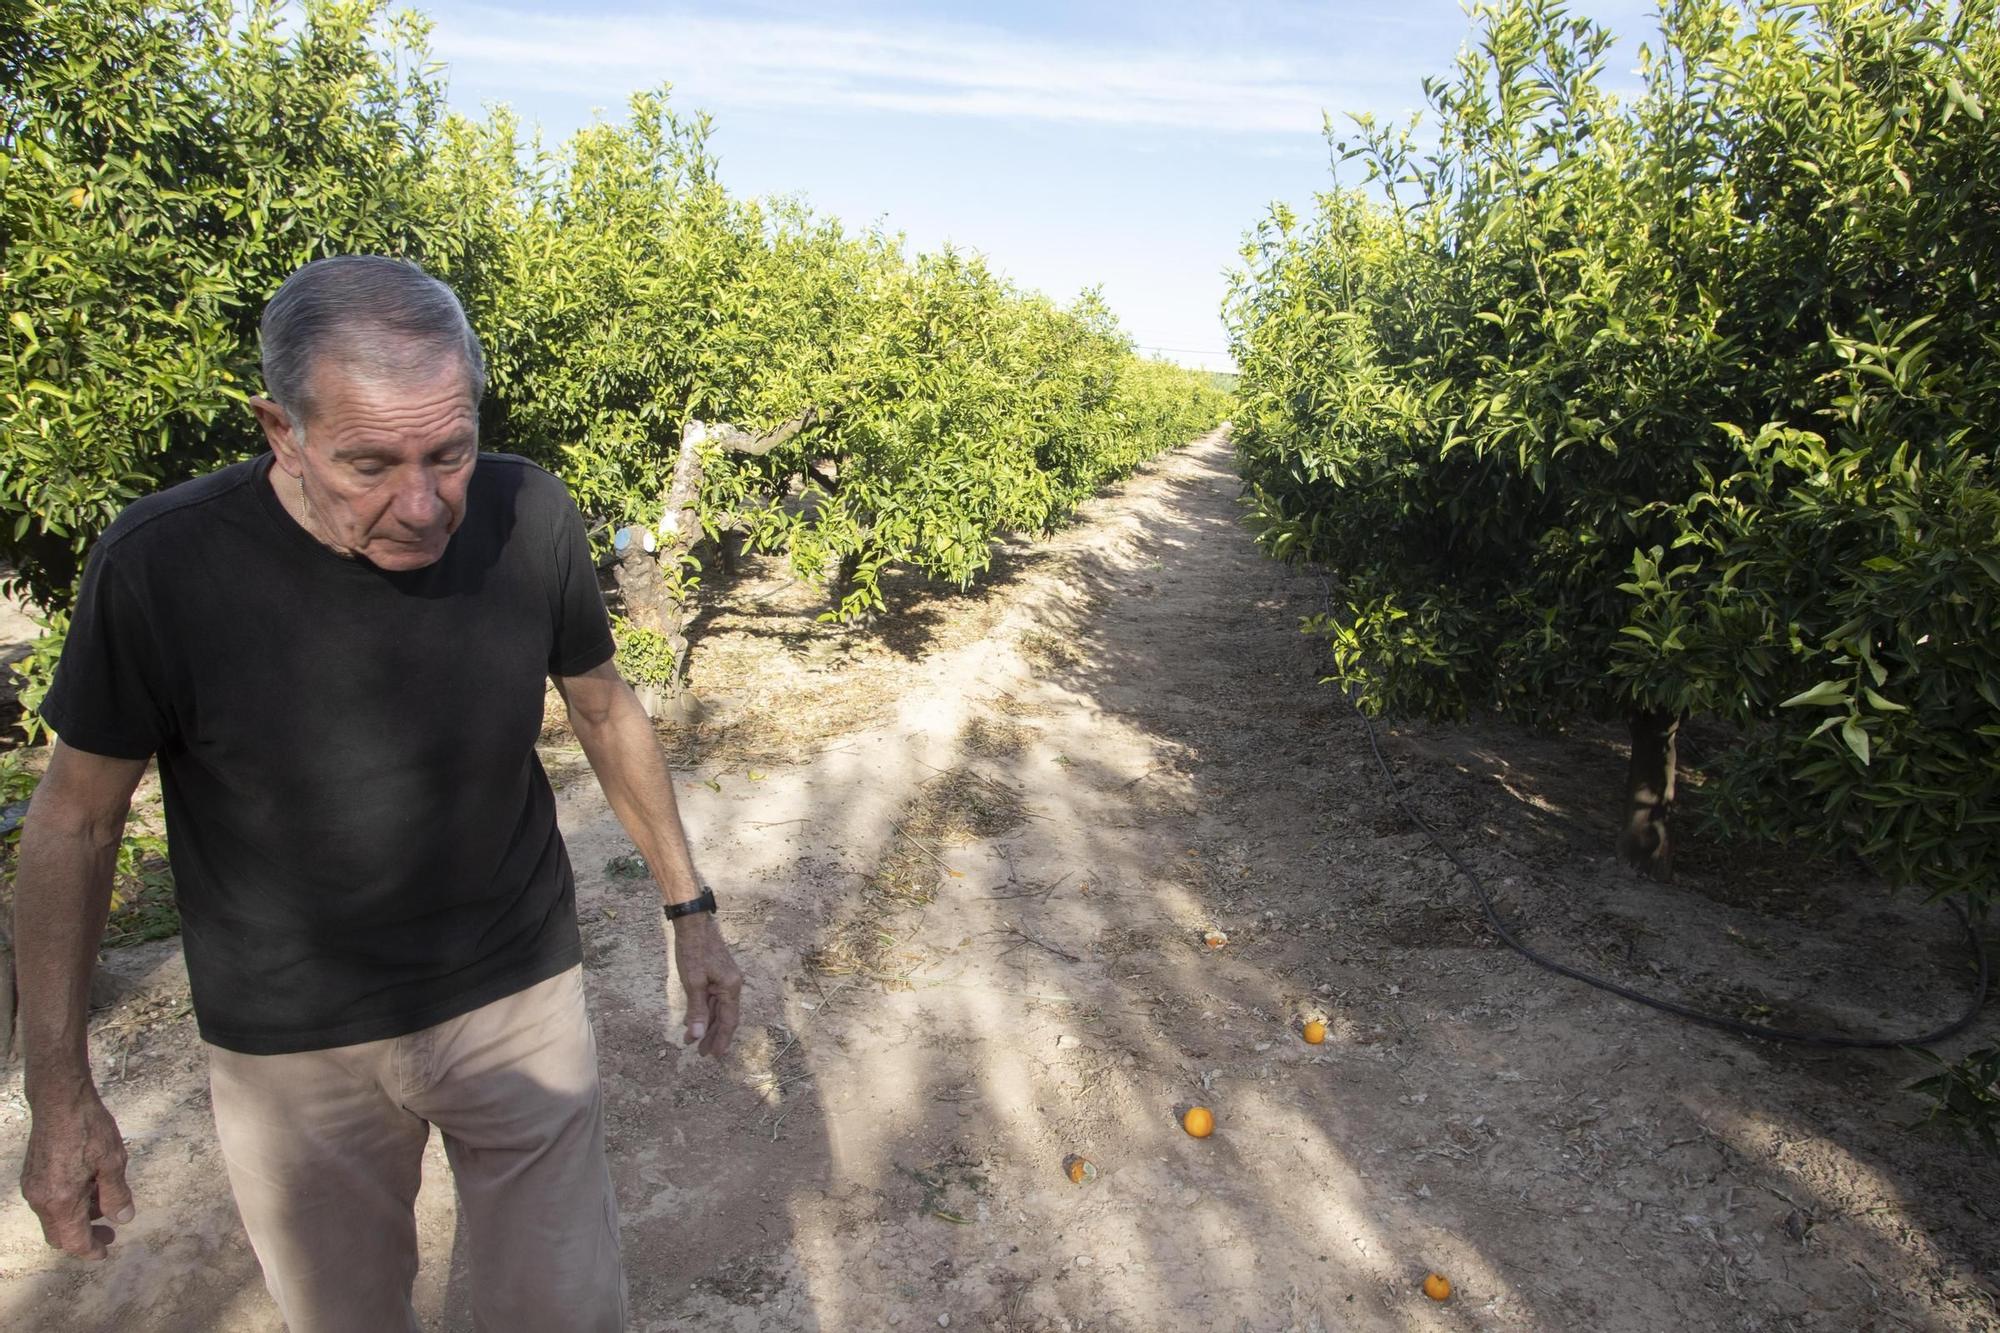 Roban la cosecha de mandarinas en un campo de Alberic